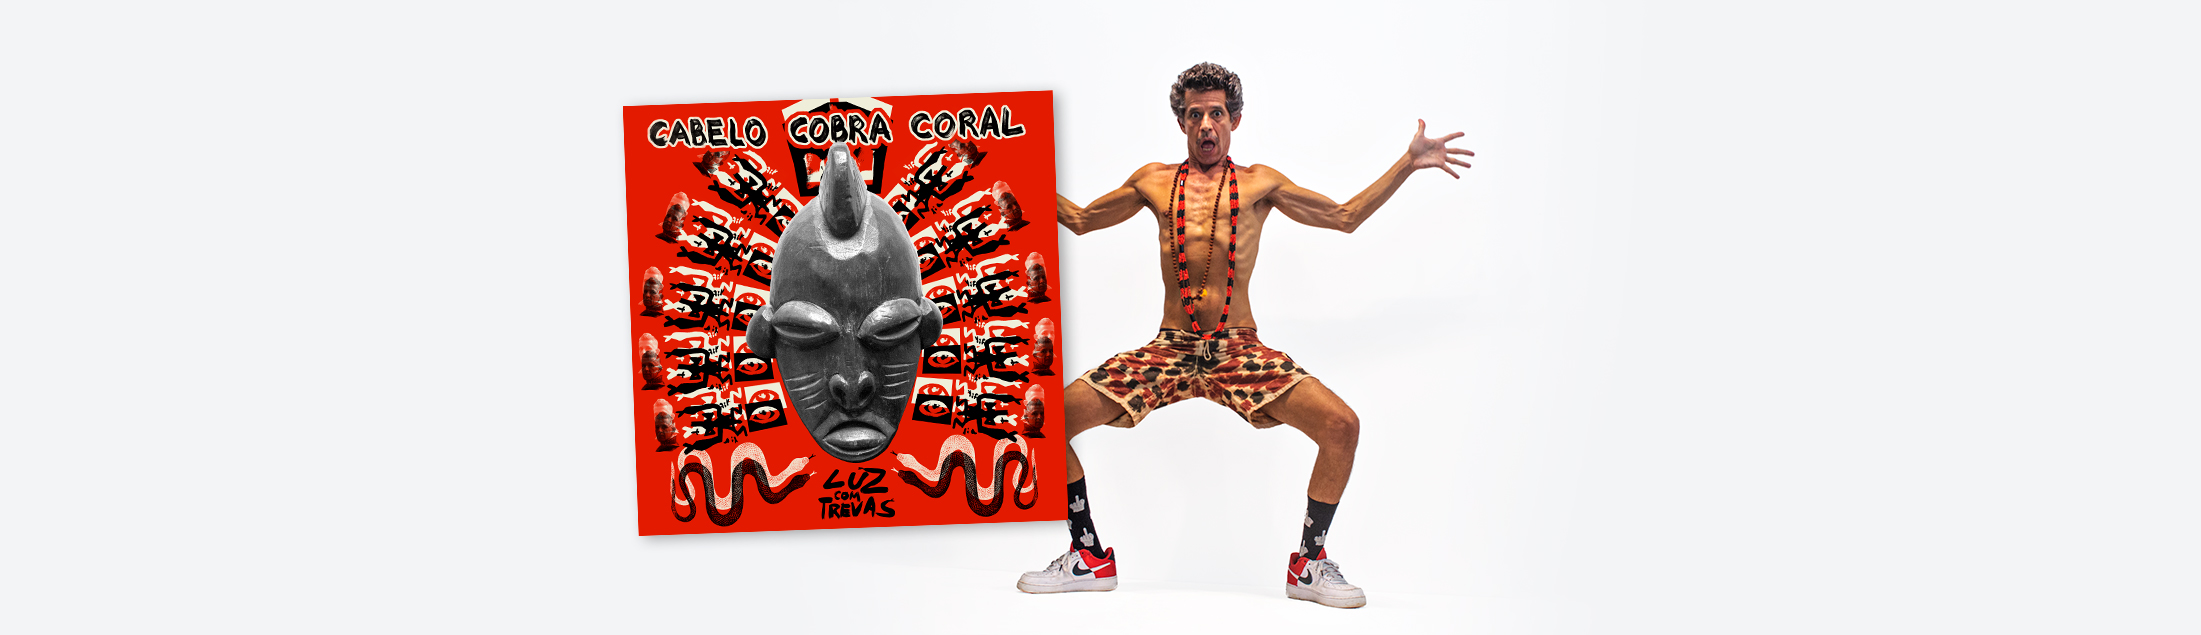 Cabelo Cobra Coral lança 'Luz com Trevas'